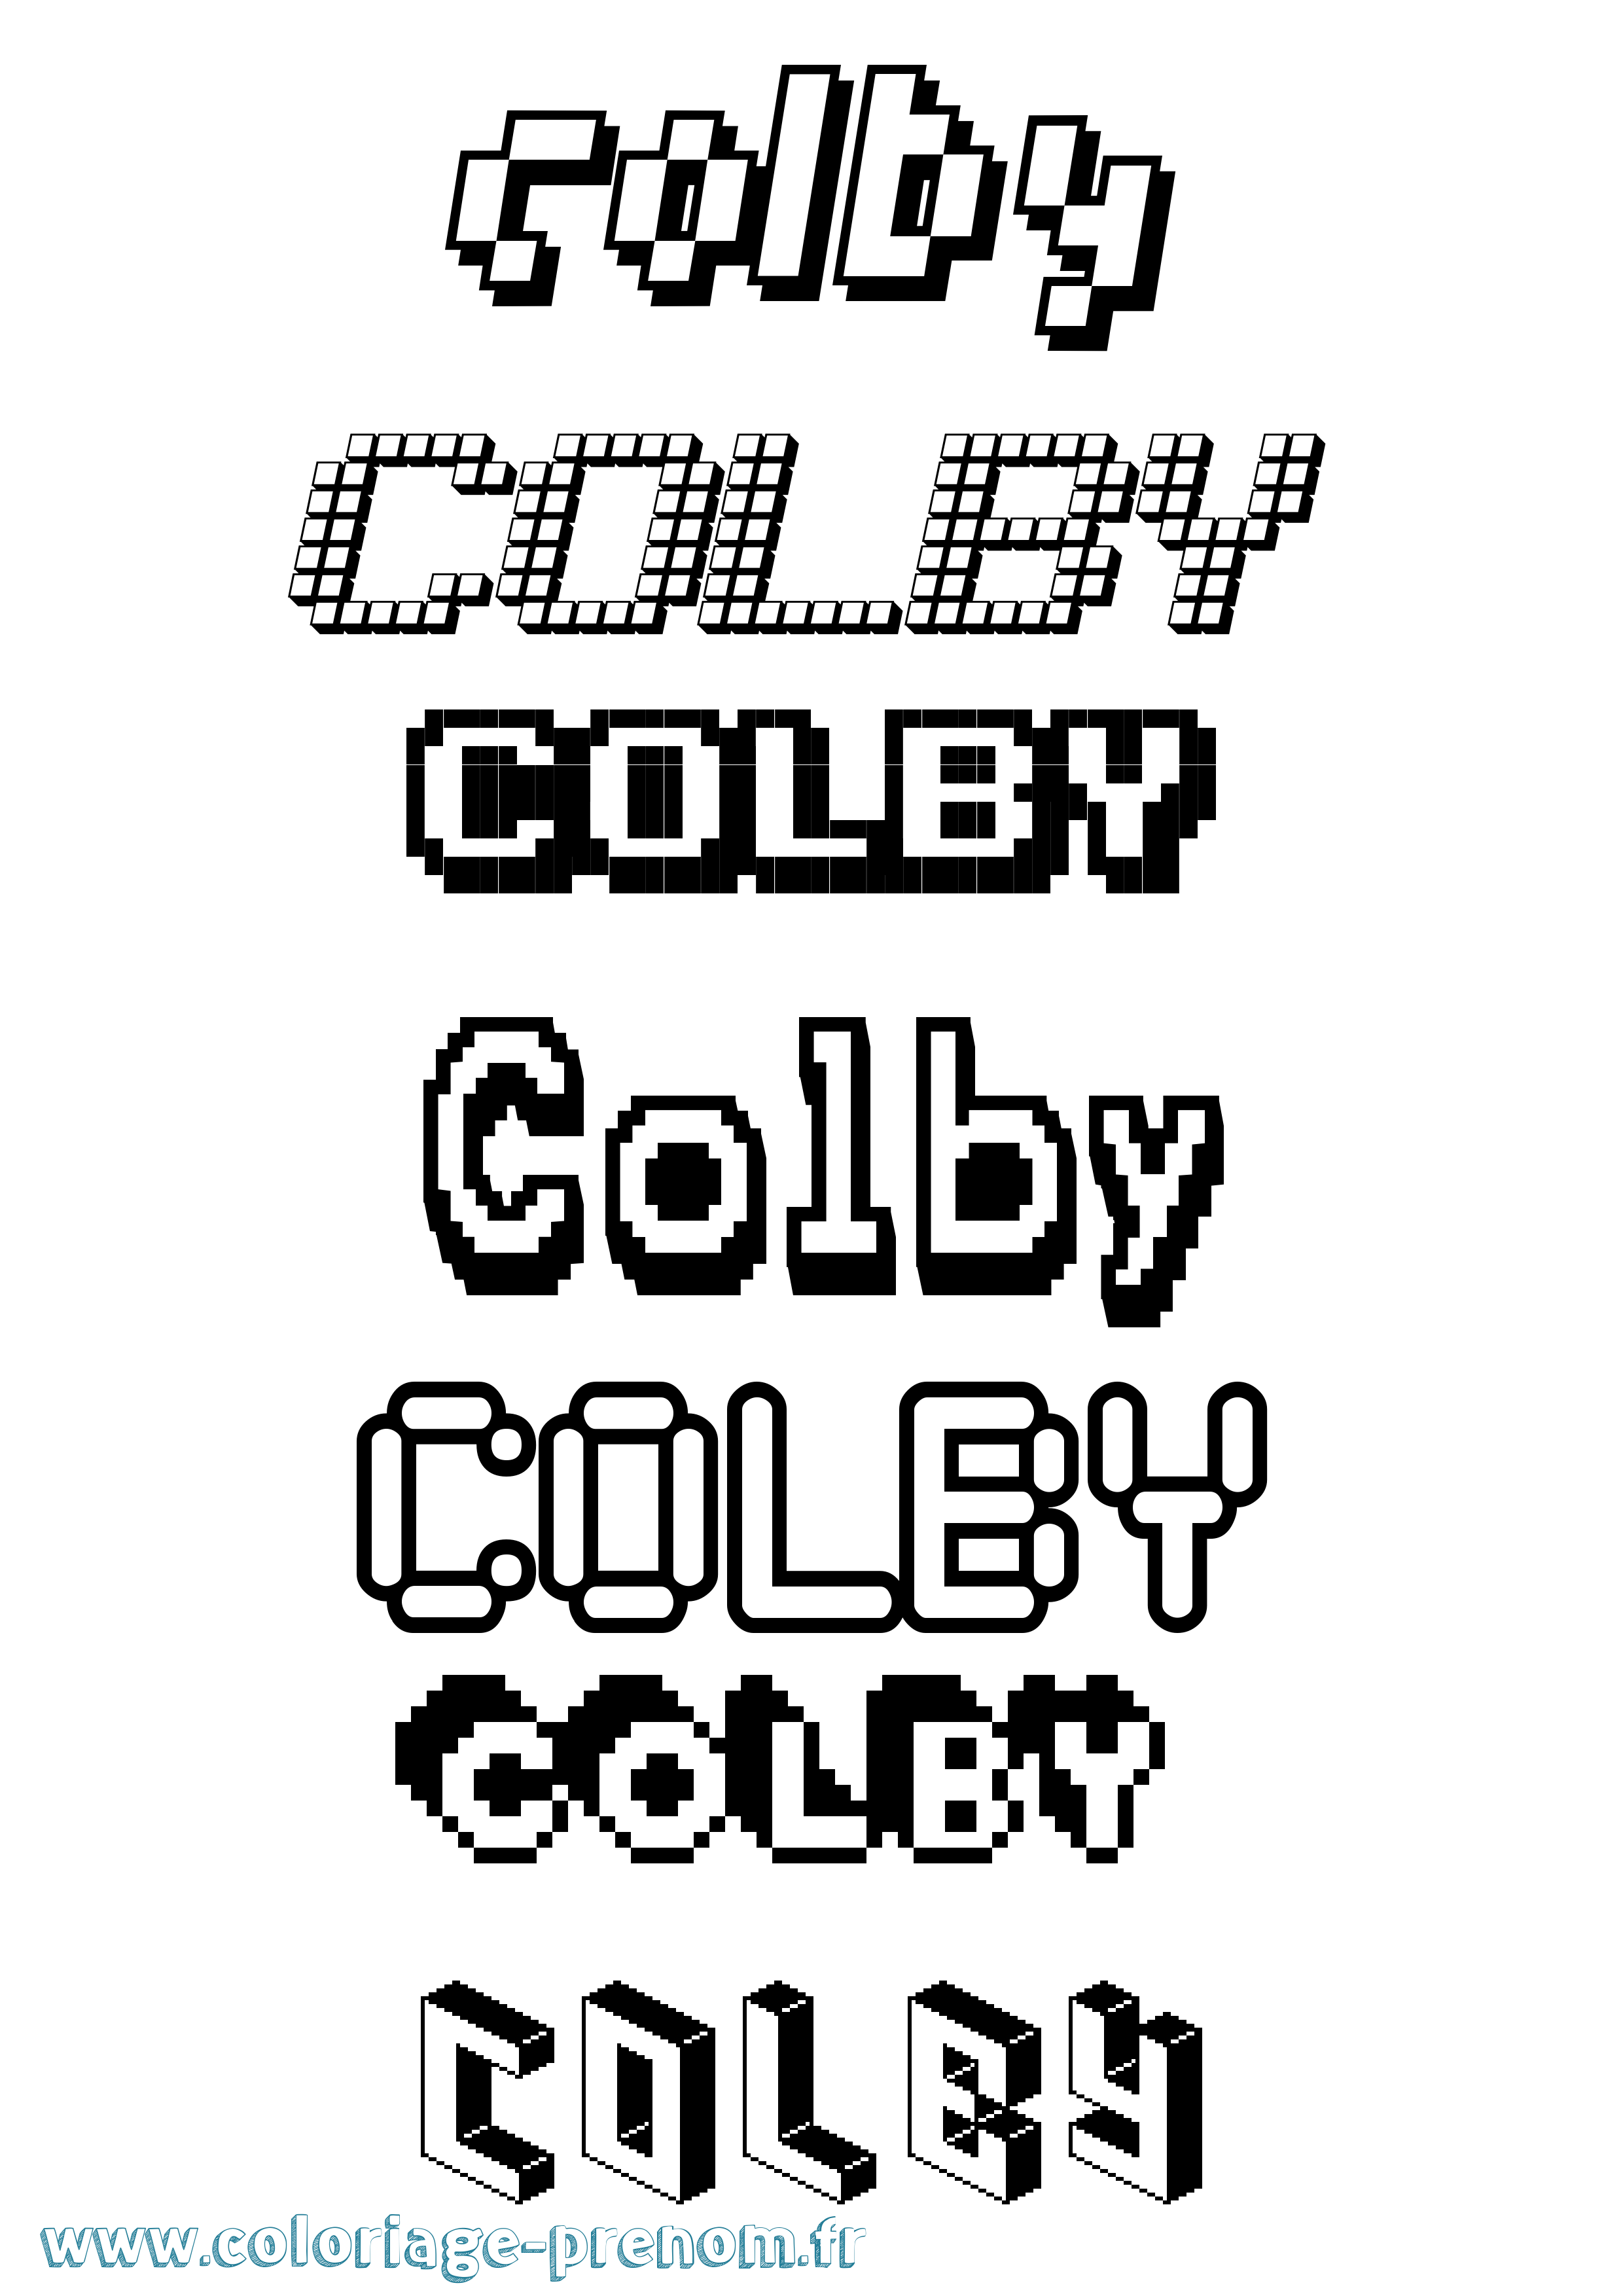 Coloriage prénom Colby Pixel